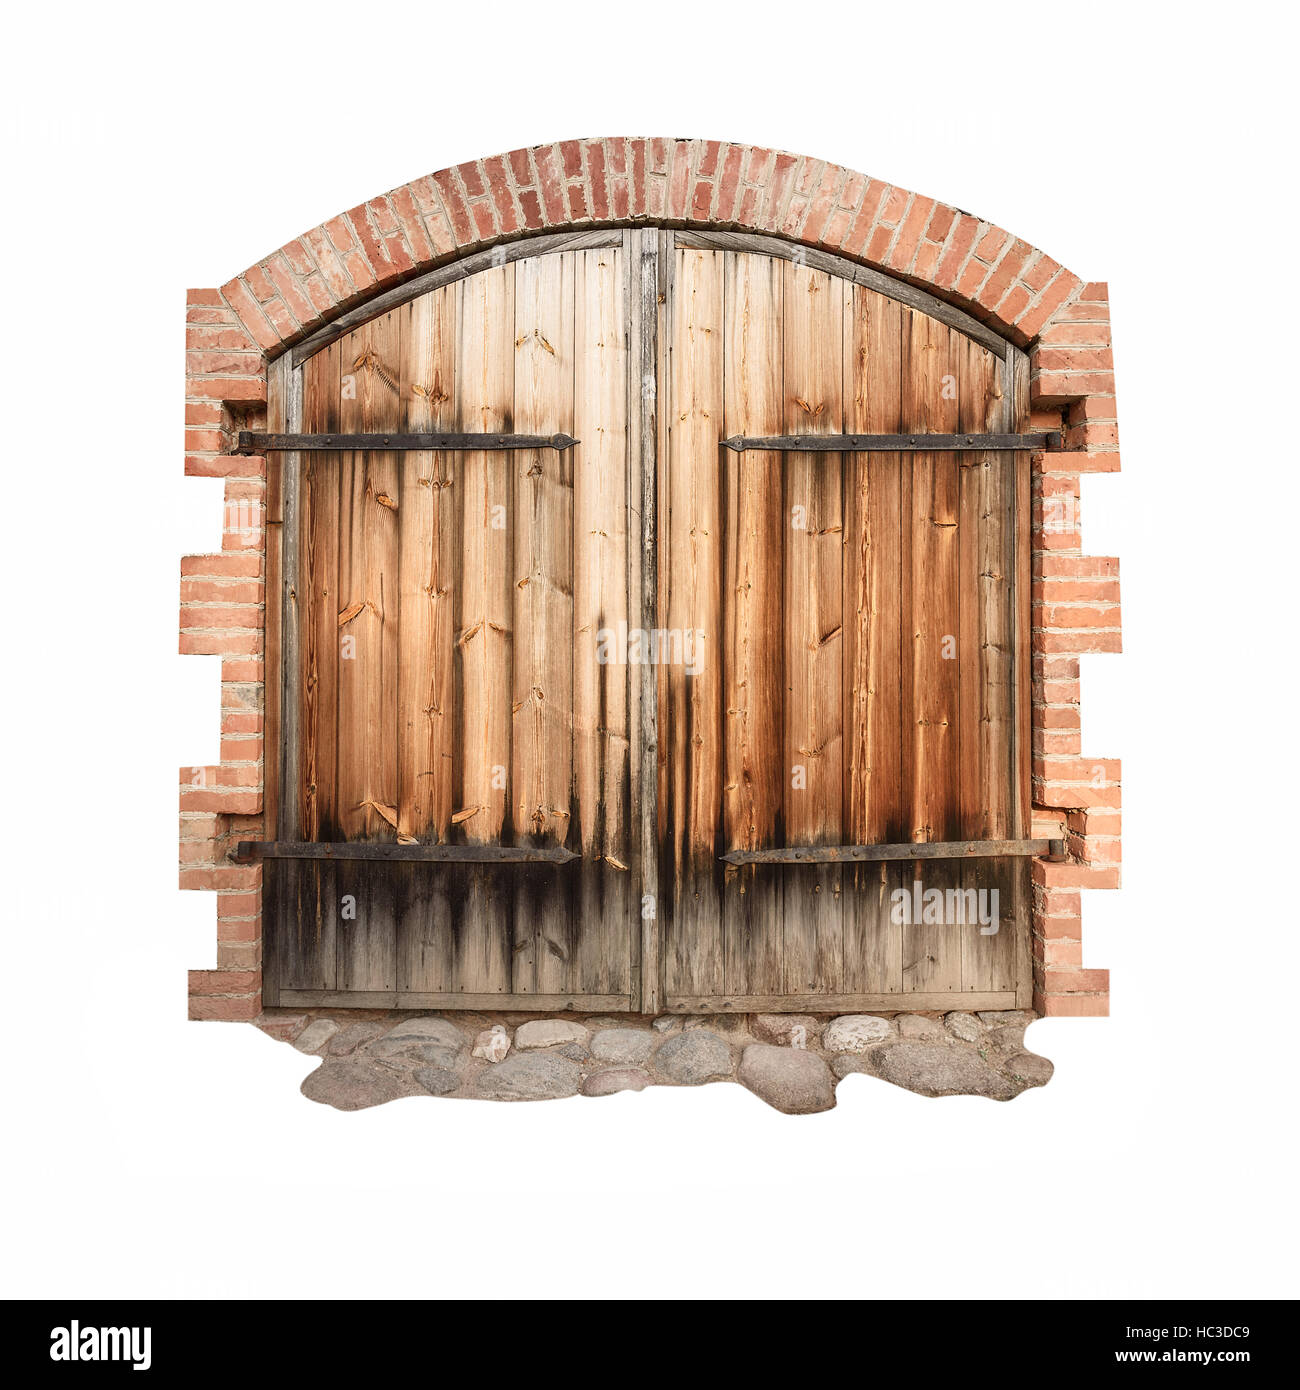 Ilustración Vectorial De La Cerradura En La Puerta Exterior De Árbol  Ilustraciones svg, vectoriales, clip art vectorizado libre de derechos.  Image 35518310